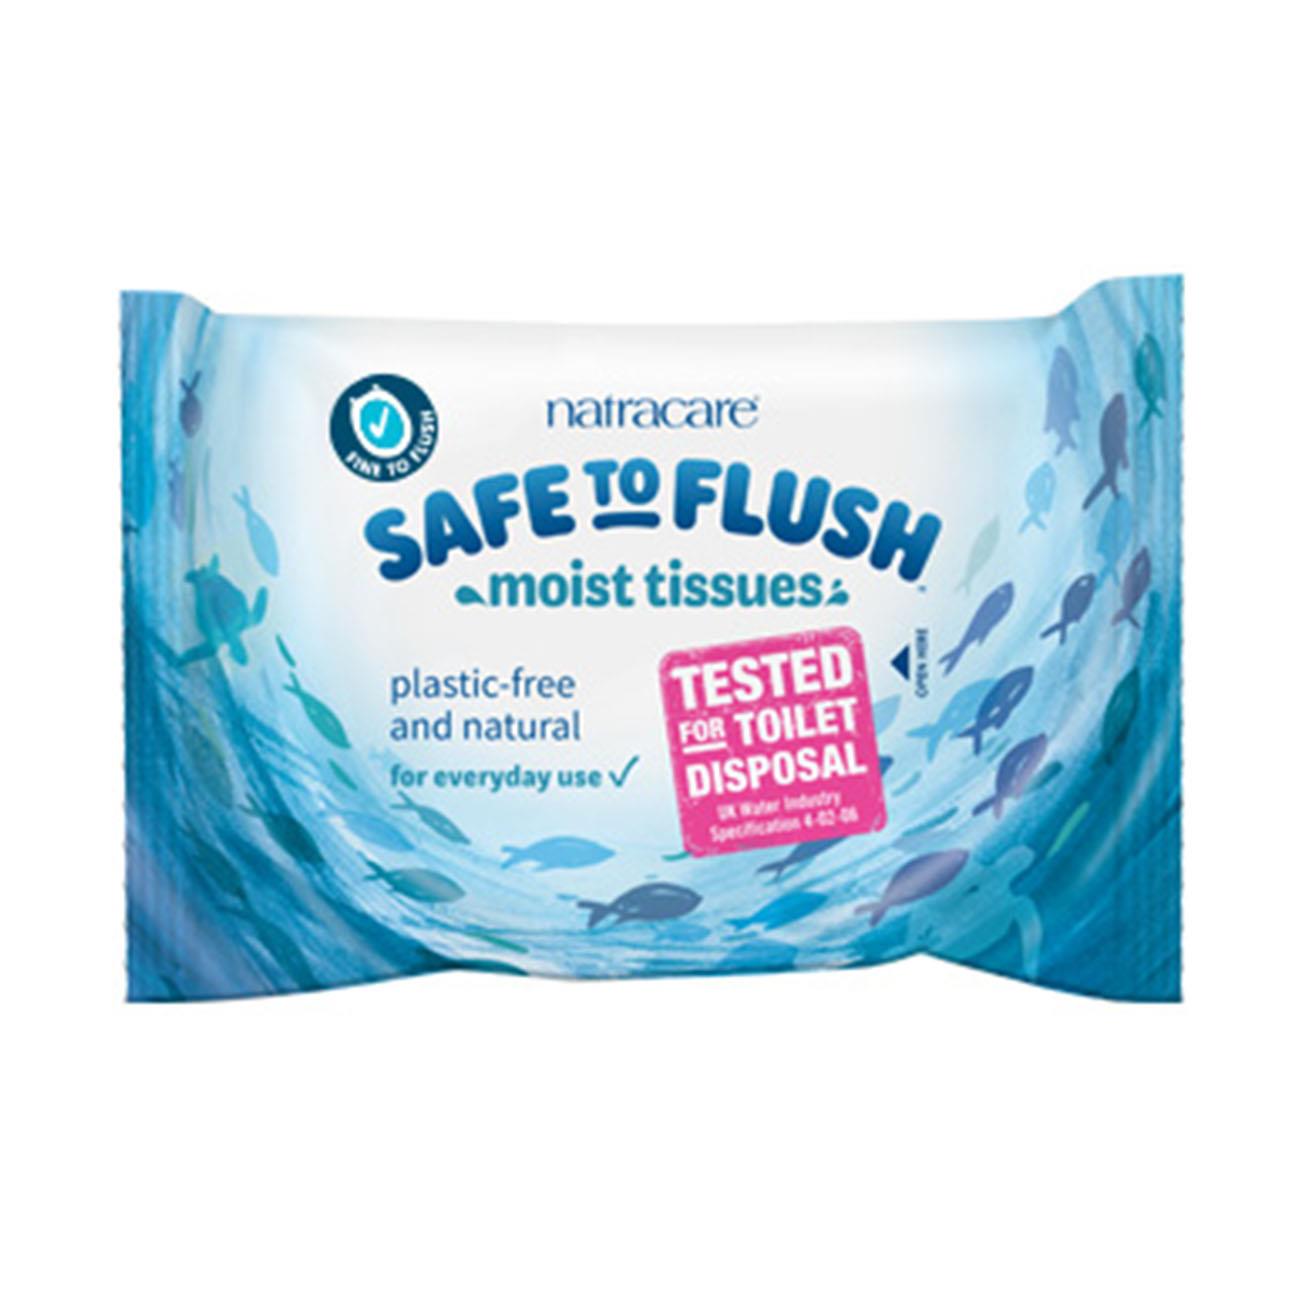 Natracare - Toilet Moist Tissue - Safe to Flush - 30wipes